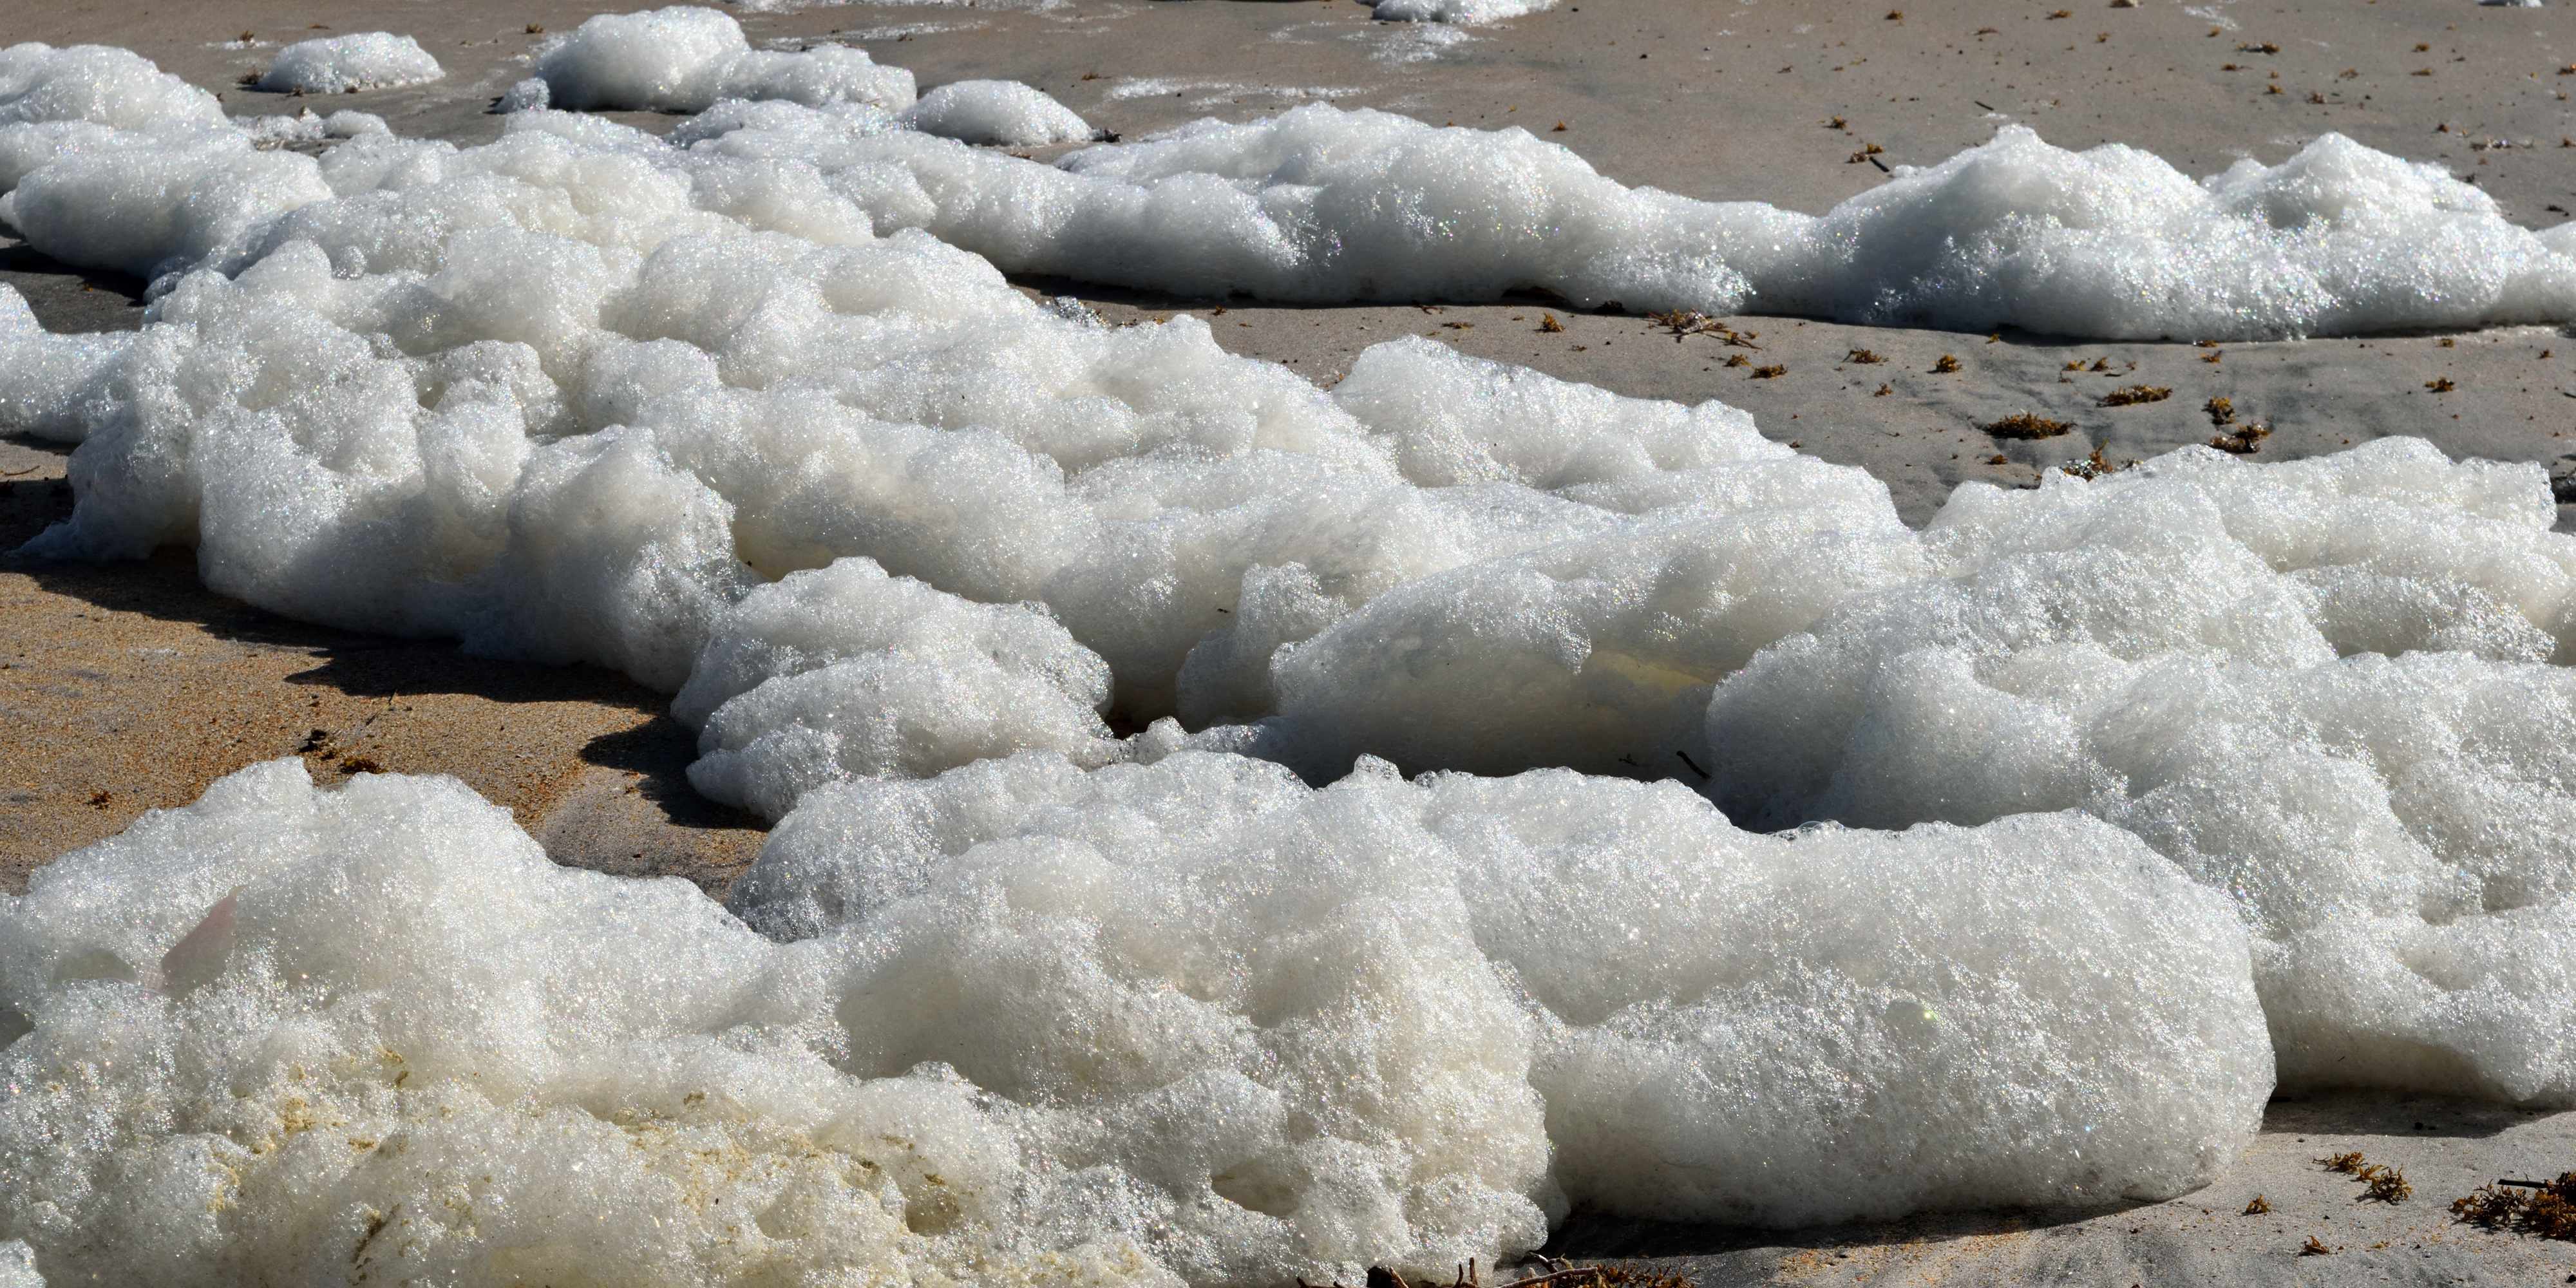 Spume / sea foam / ocean foam / beach foam formed during stormy